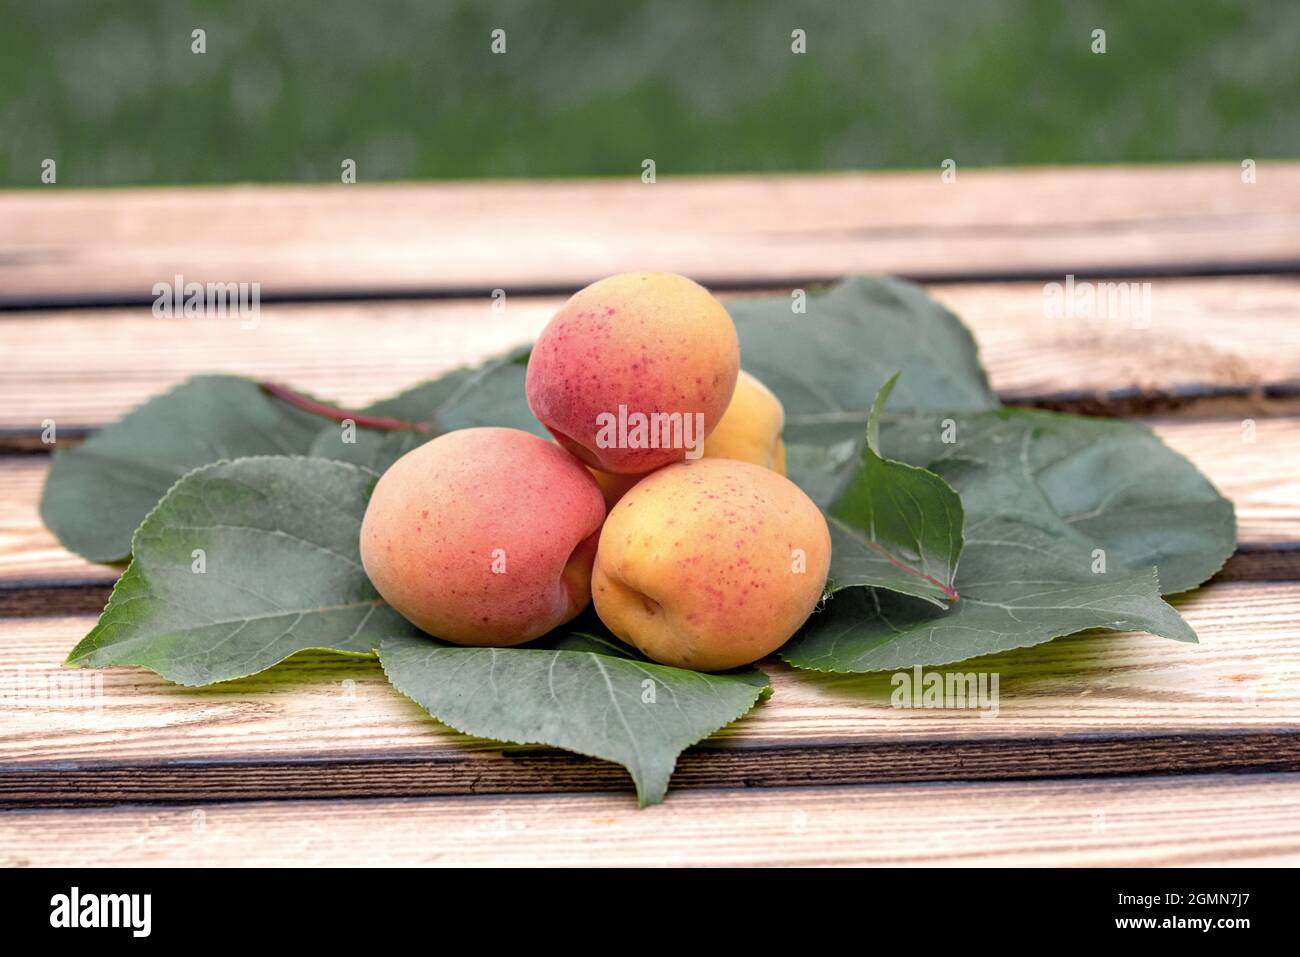 Aprikosenbaum (Prunus armeniaca 'Tardicot', Prunus armeniaca Tardicot), Aprikosen der Sorte Tardicot Stockfoto